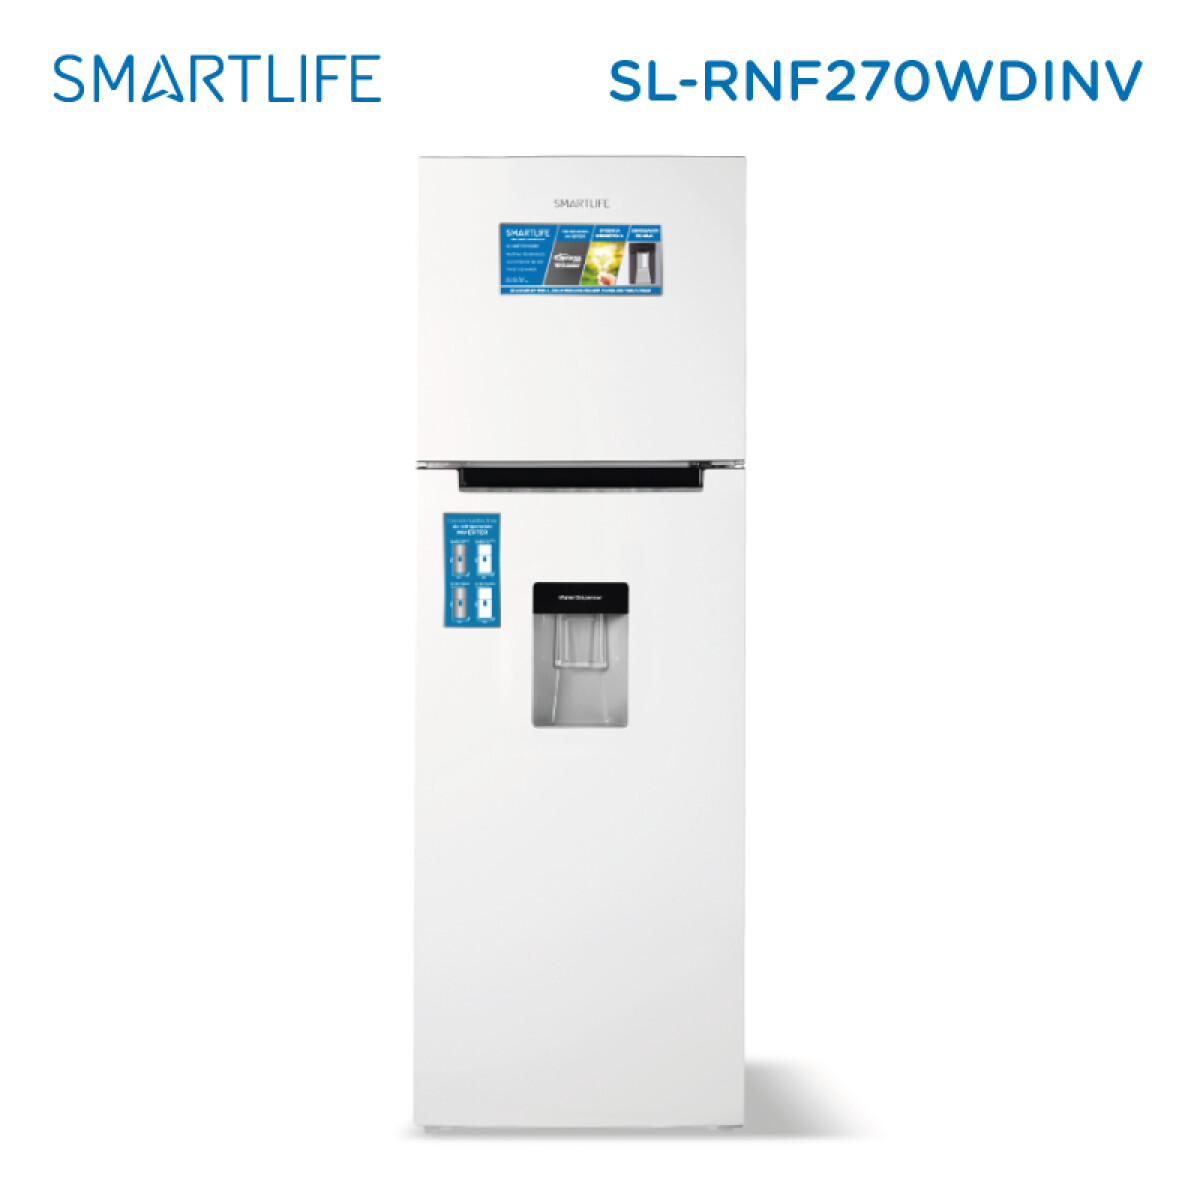 Smartlife Refrigerador Sl-rnf270wd Inverter 